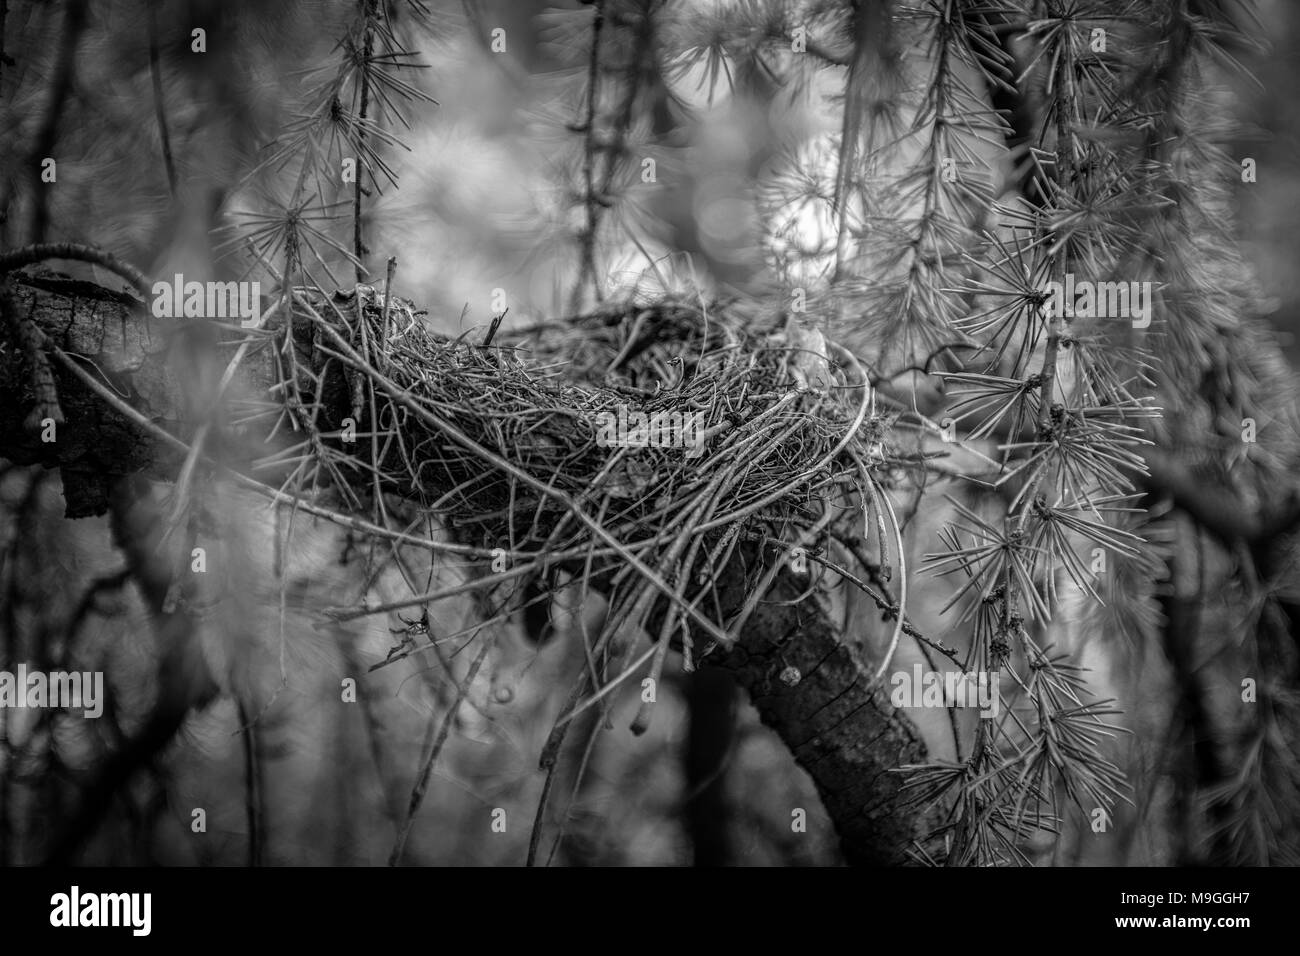 Una nebbiosa, moody b/w close-up di un vuoto di Robin's Nest nascosto in un sempreverde breve ramo di albero e fogliame, con soft-focus distanti luce dello sfondo. Foto Stock